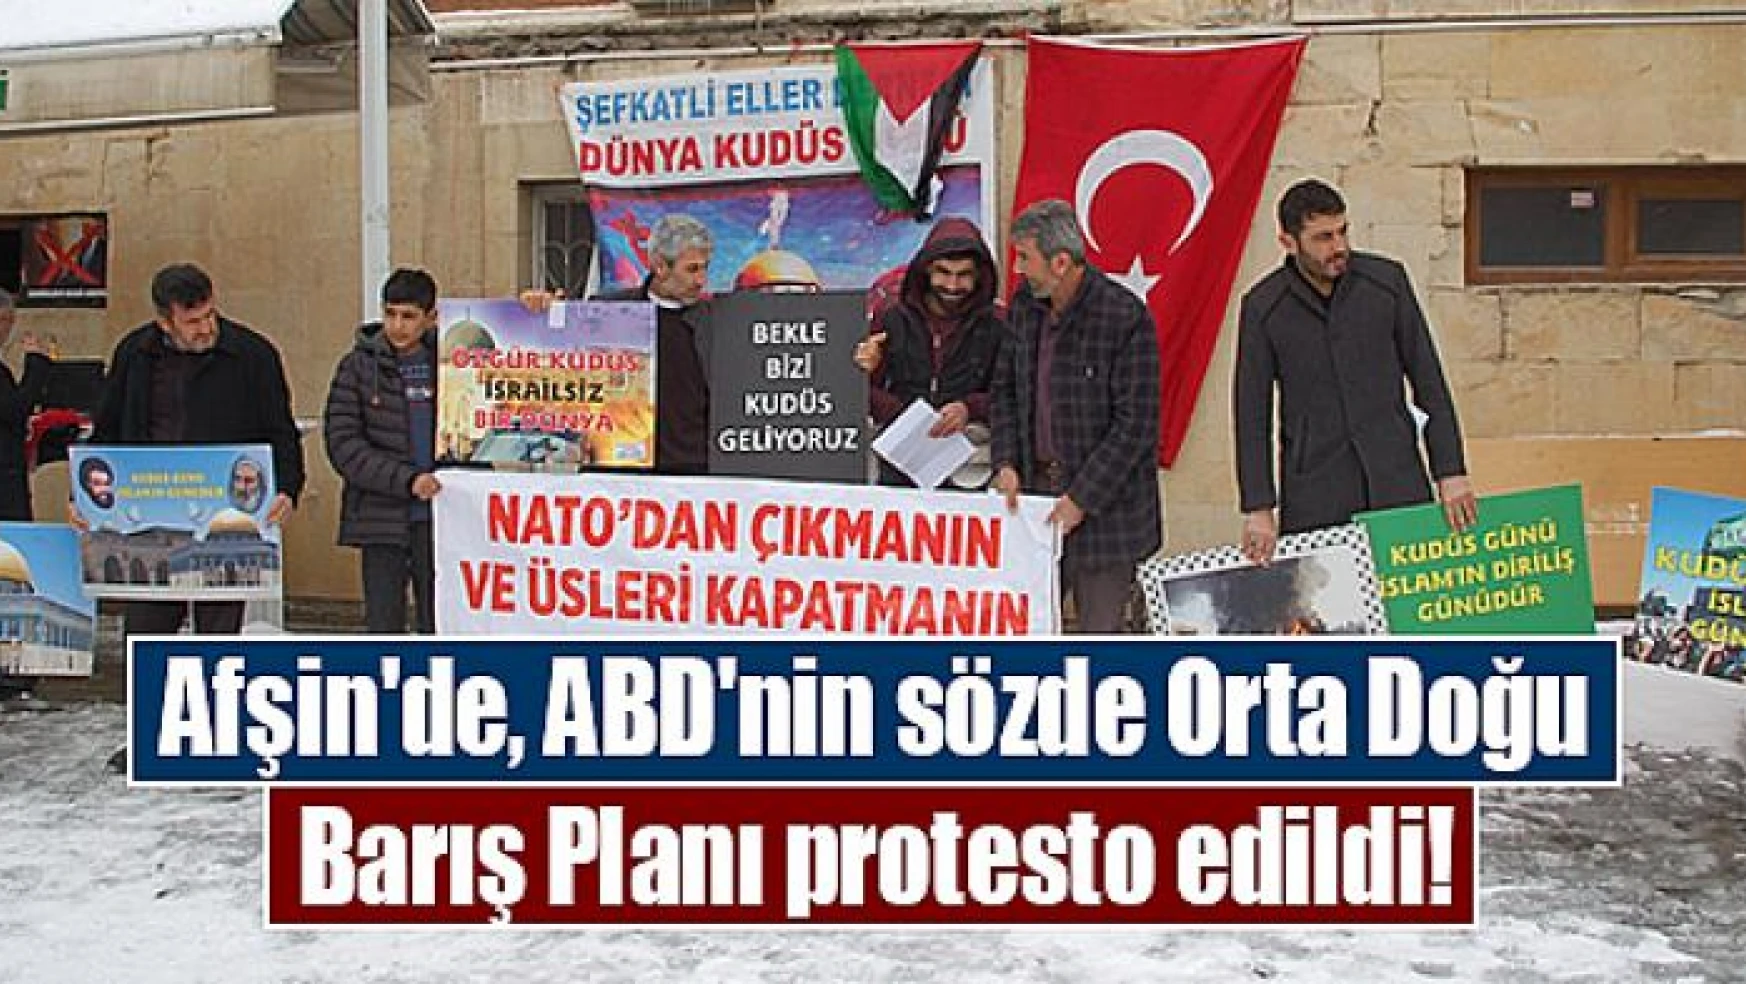 Afşin'de, ABD'nin sözde Orta Doğu Barış Planı protesto edildi!